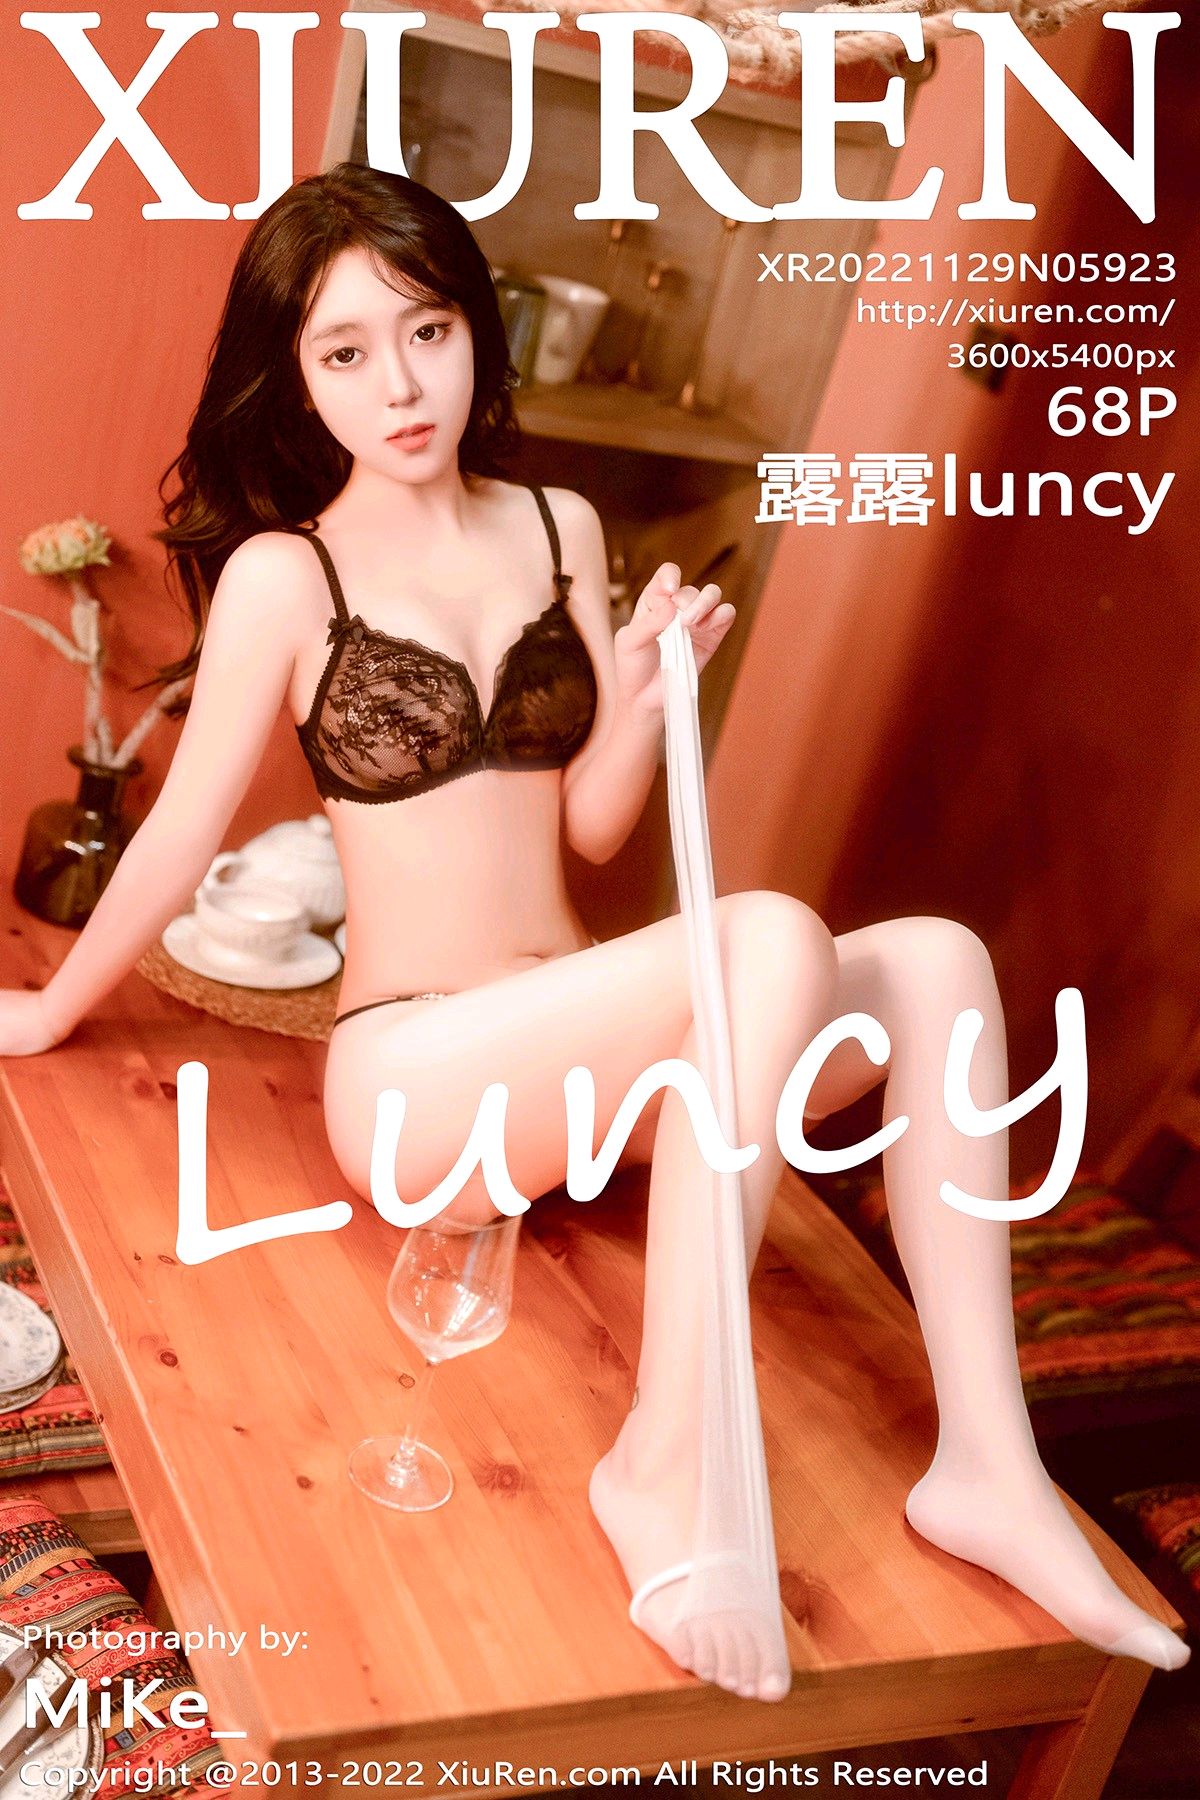 [XiuRen秀人网] 2022.11.29 No.5923 露露luncy [68+1P]